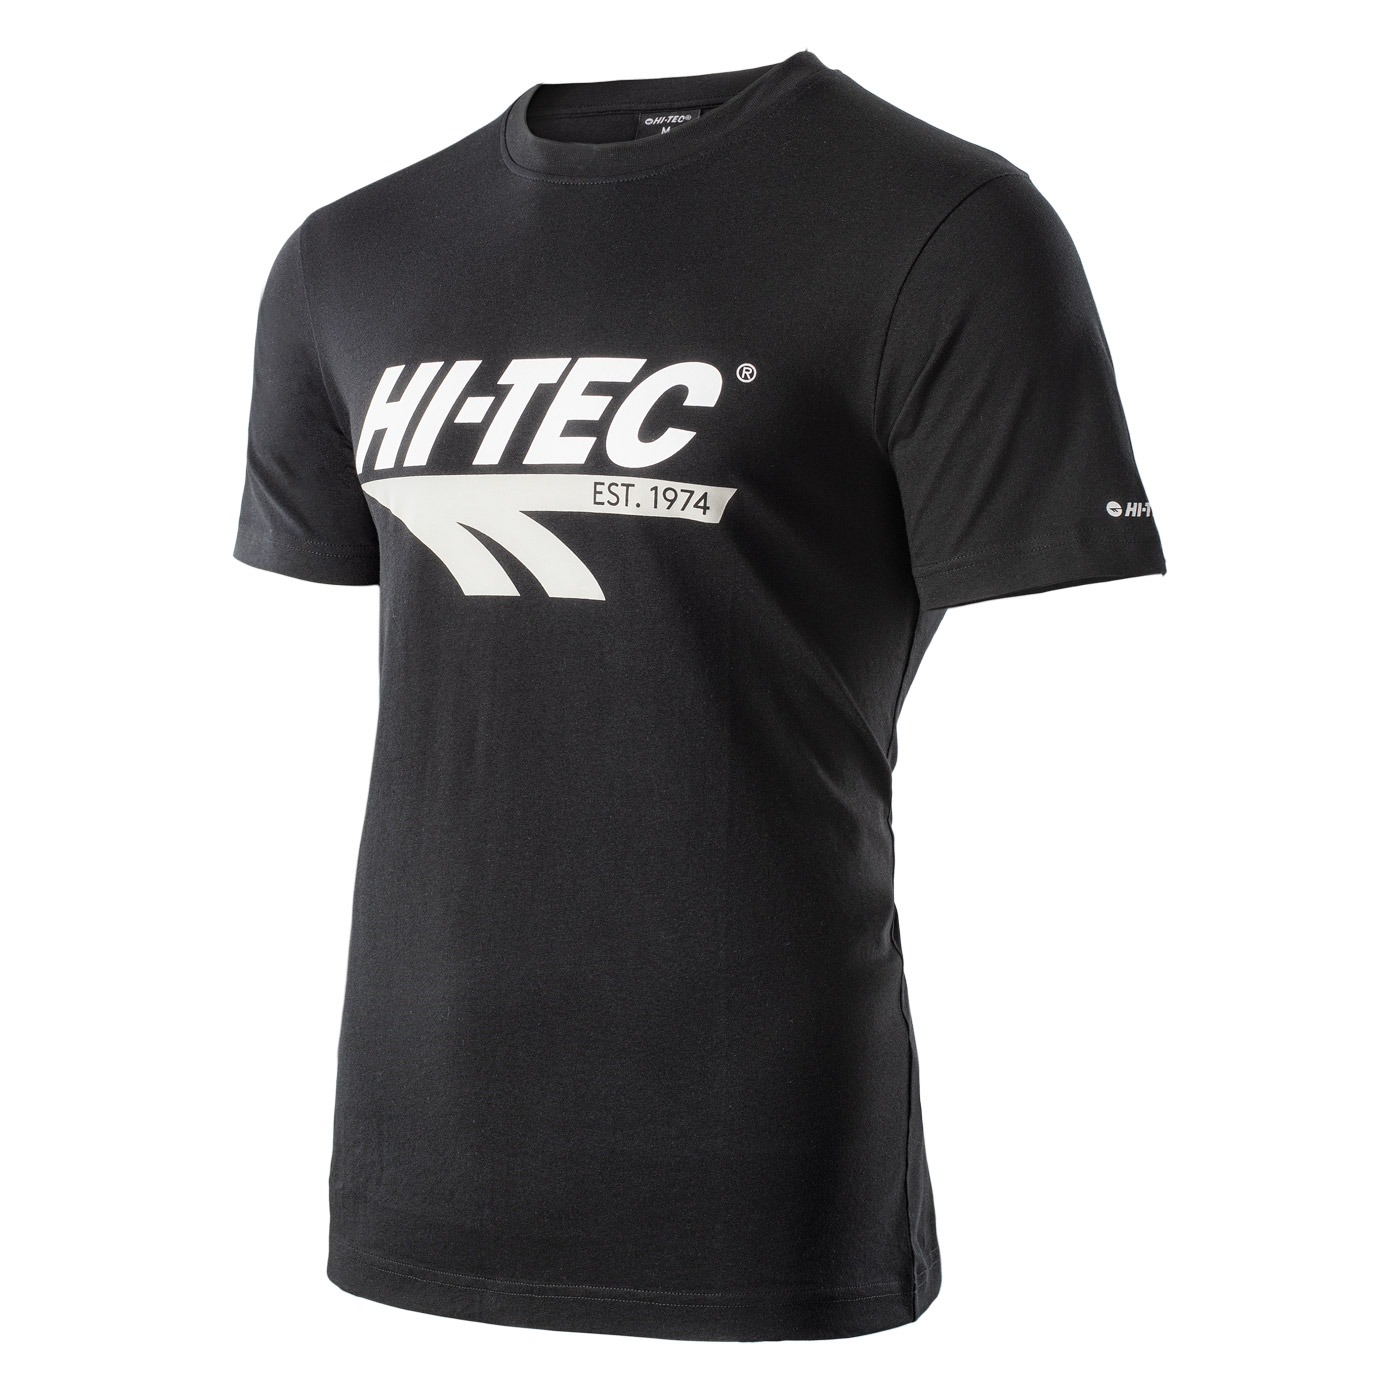 HI-TEC Retro - pánské retro tričko (černé) Barva: Černá (Black), Velikost: L